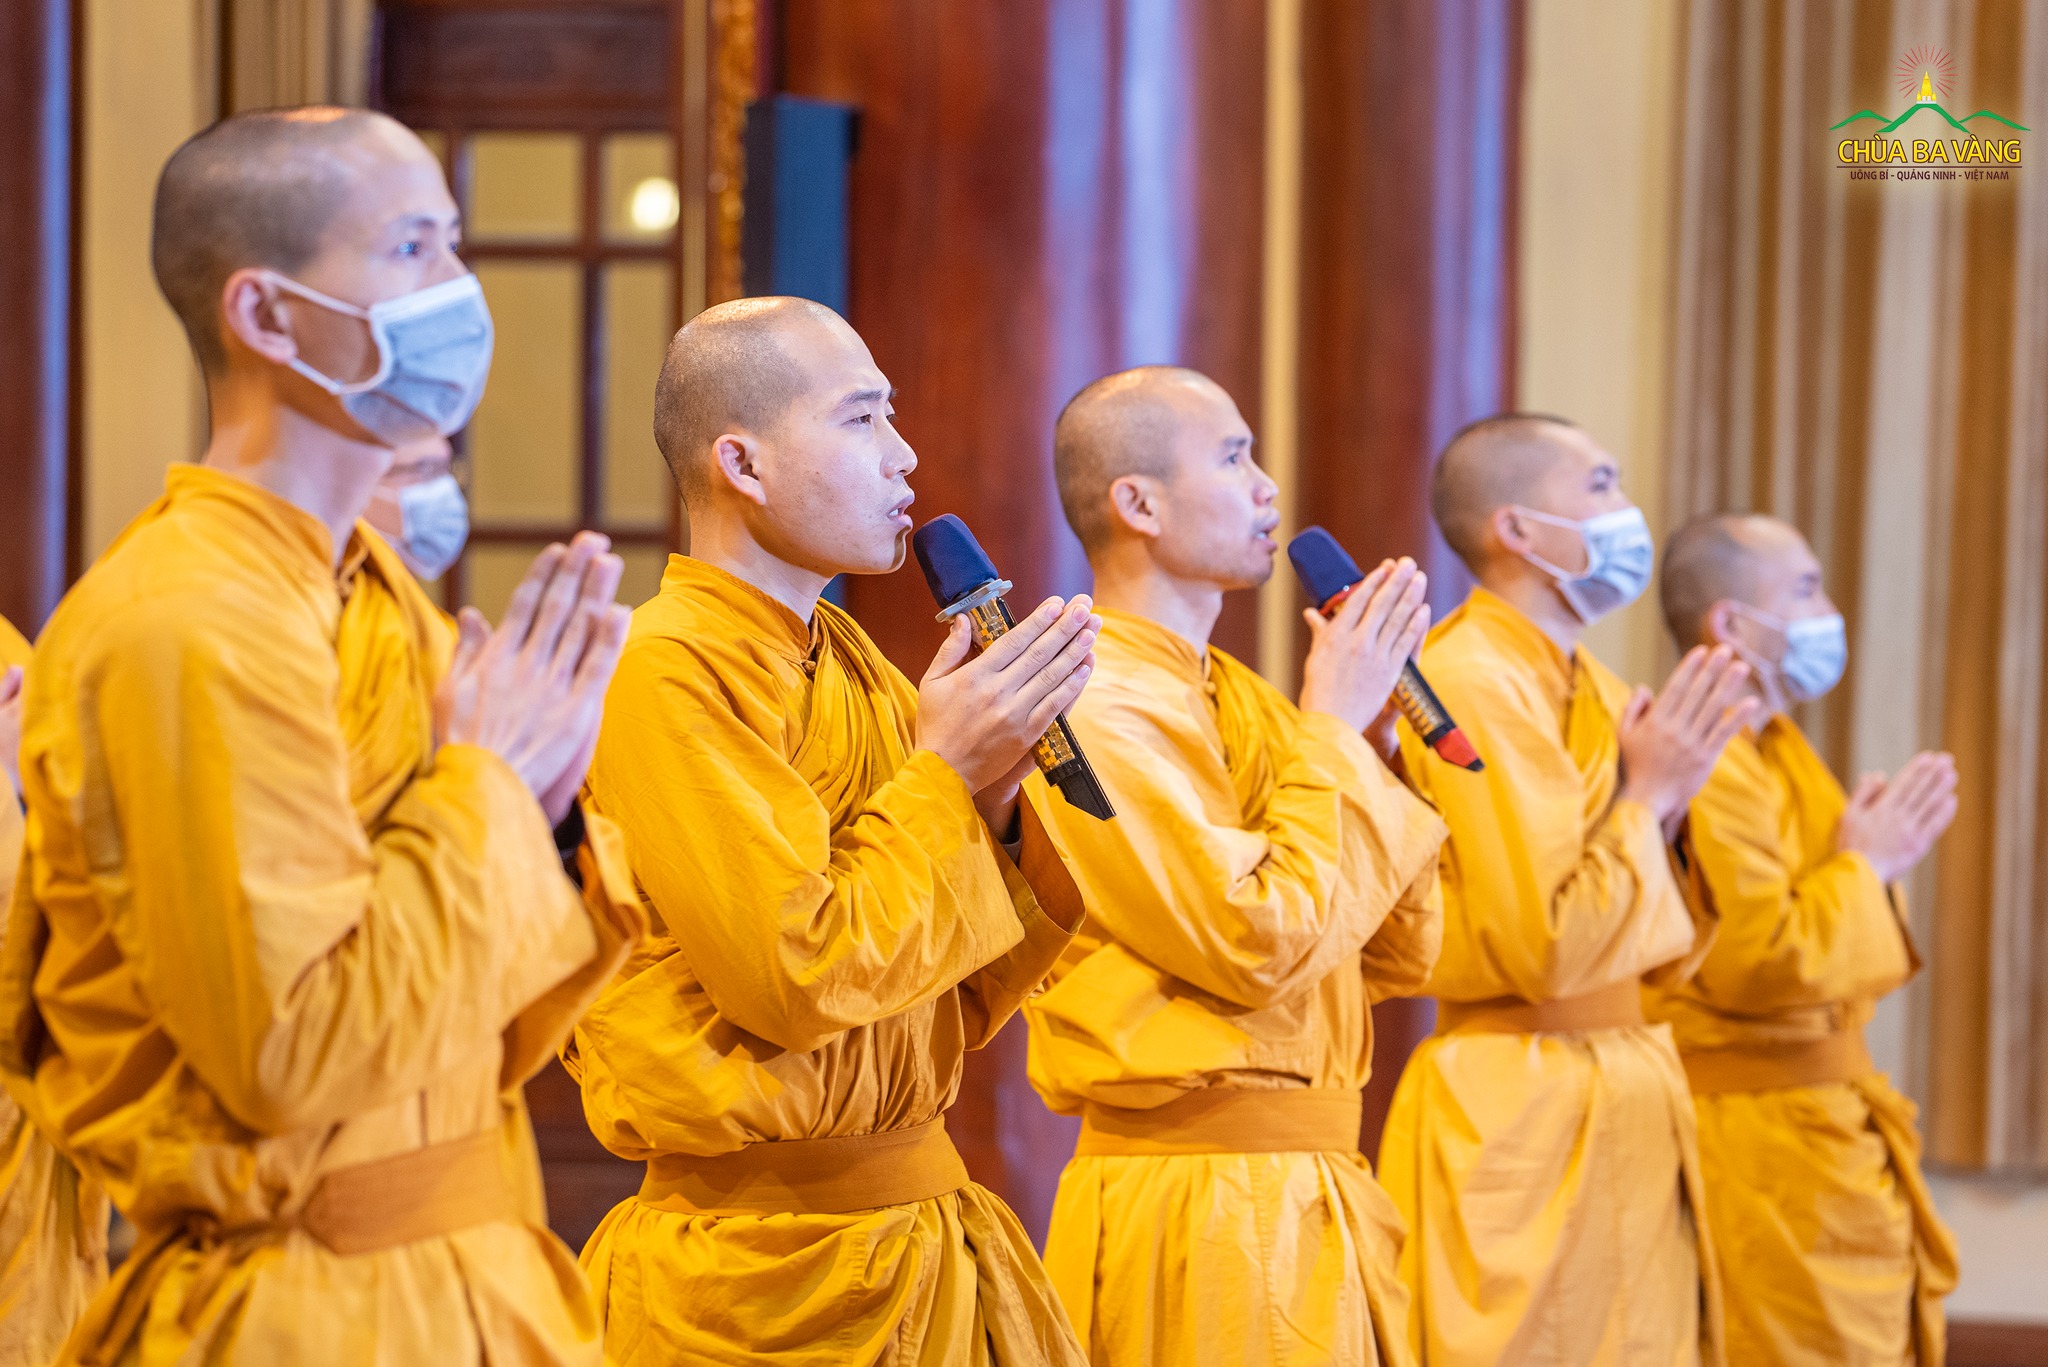 Chư Tăng chắp tay trang nghiêm tác lễ tụng kinh để các Phật tử ở xa hướng tâm tham dự chương trình